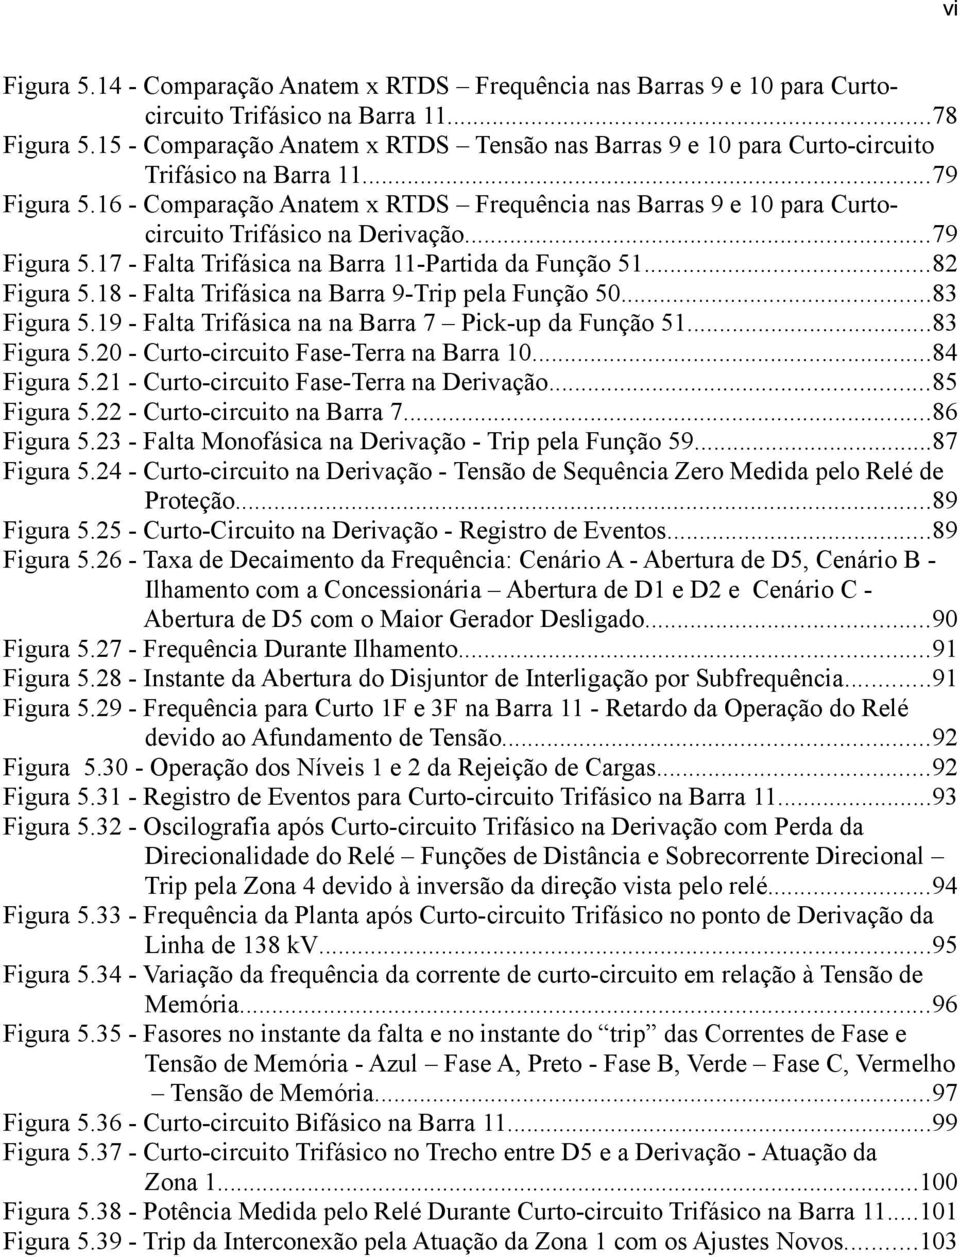 16 - Comparação Anatem x RTDS Frequência nas Barras 9 e 10 para Curtocircuito Trifásico na Derivação...79 Figura 5.17 - Falta Trifásica na Barra 11-Partida da Função 51...82 Figura 5.